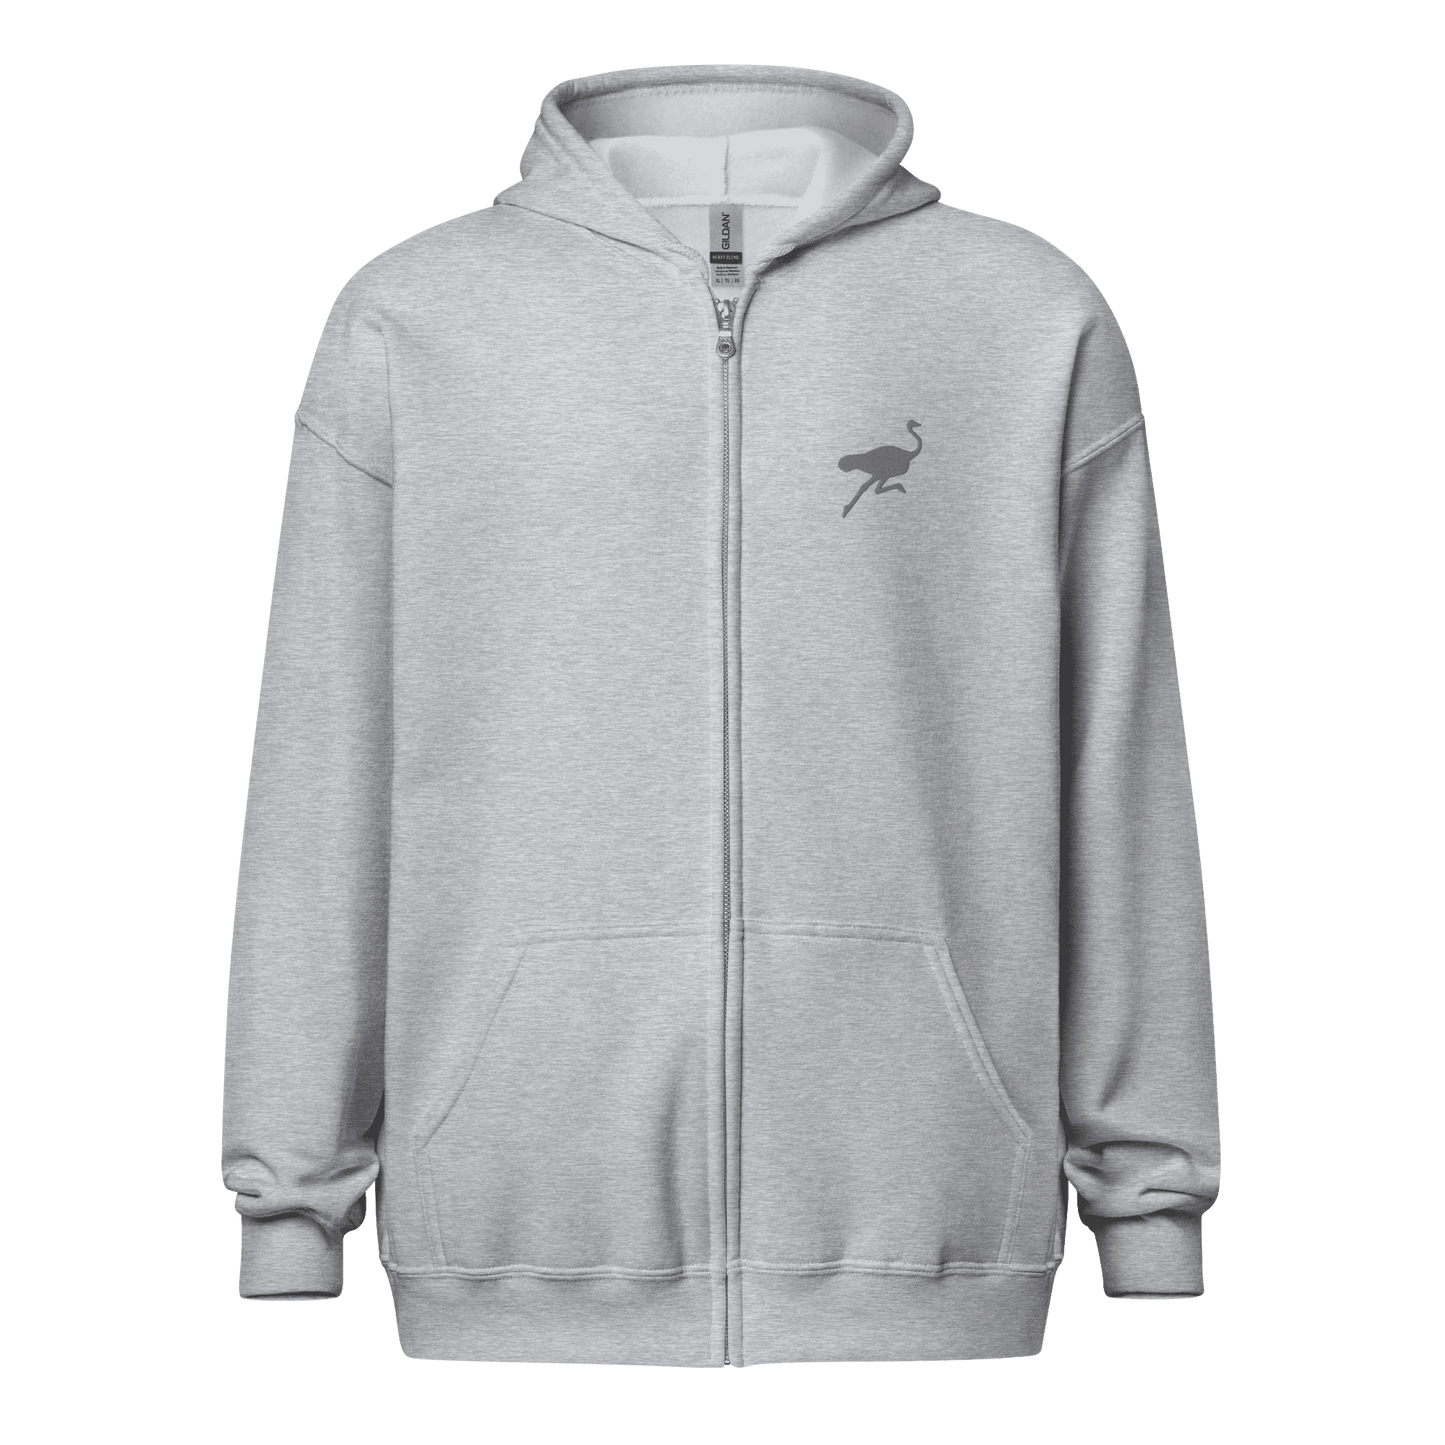 Nostrich embroidery Unisex heavy blend zip hoodie